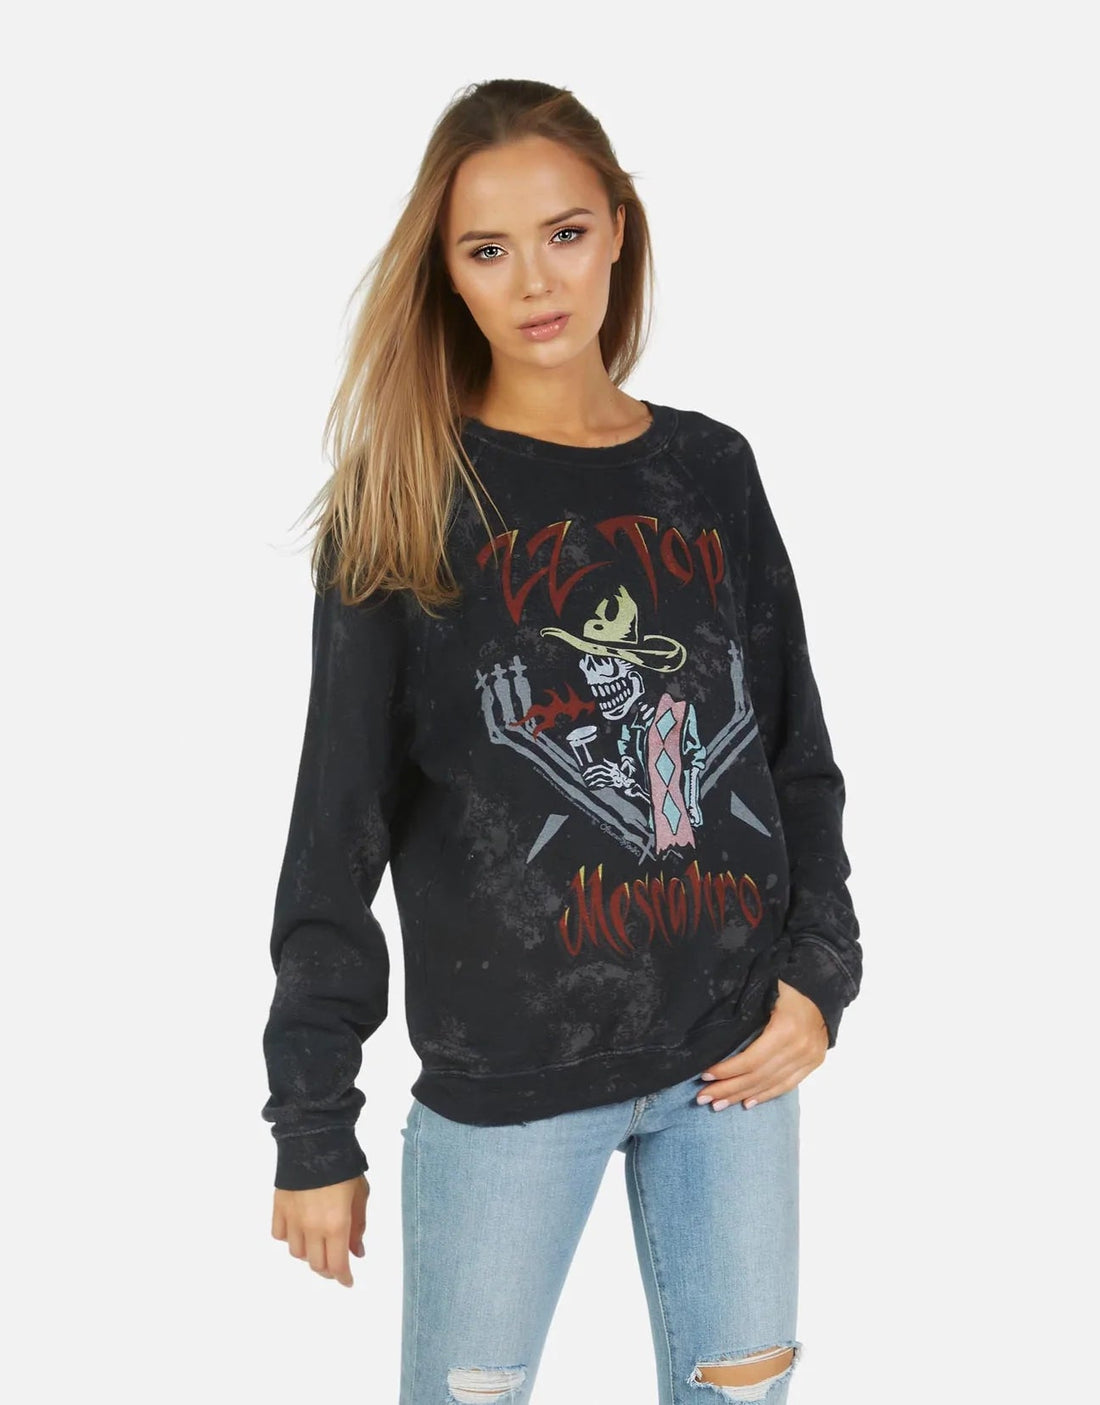 Shop Lauren Moshi Anela ZZ Top Band Sweater - Premium Sweater from Lauren Moshi Online now at Spoiled Brat 